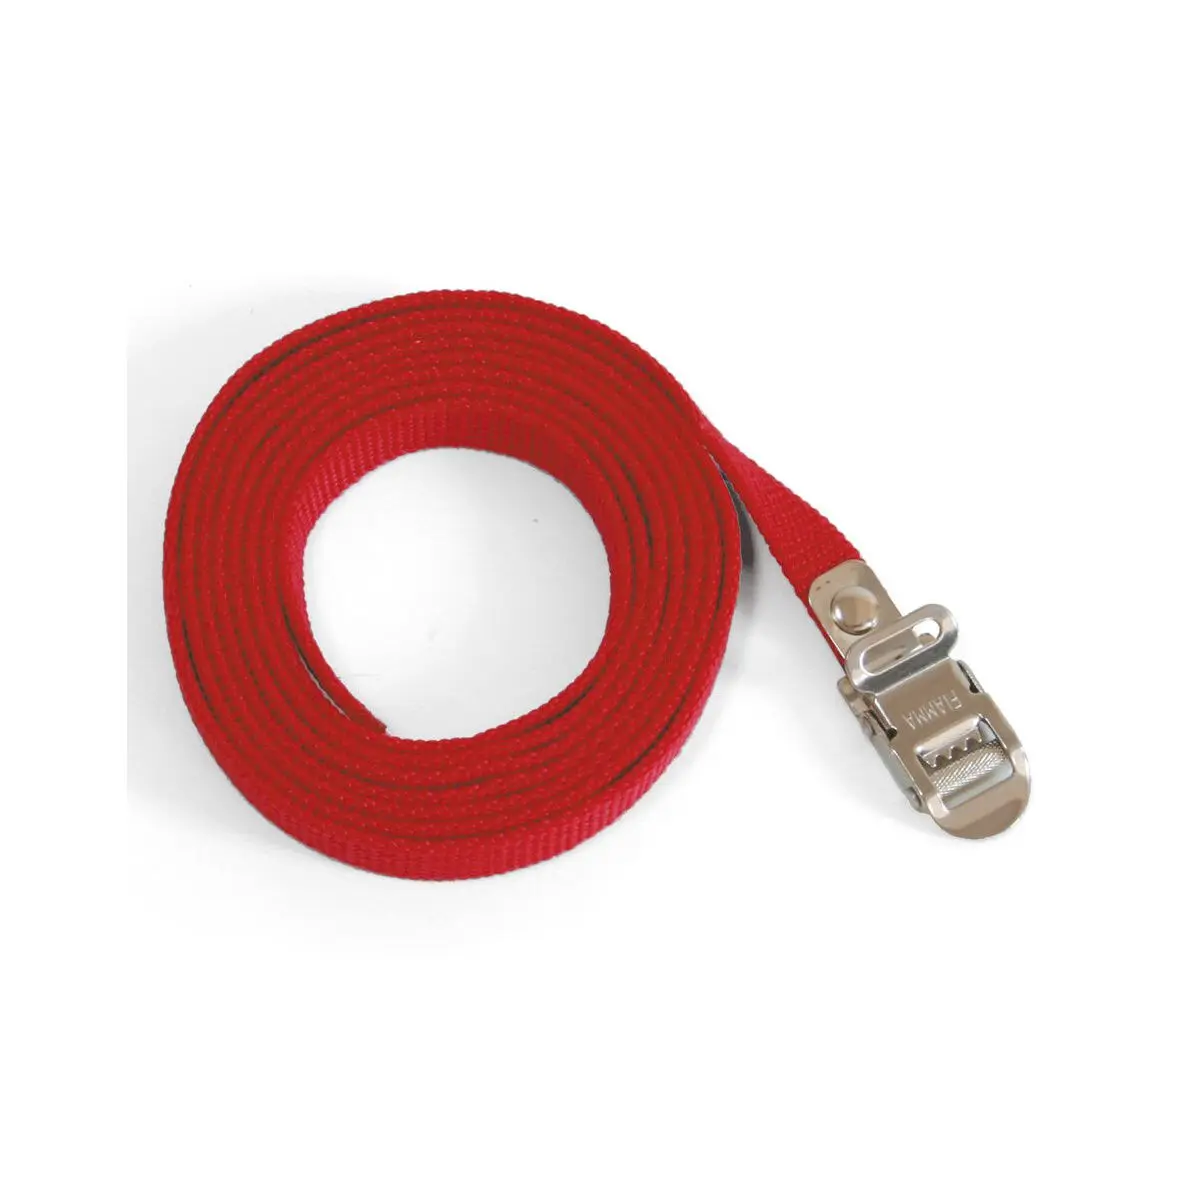 Bezpečnostný pásik Bezpečnostný pásik - červený, 1 ks, 200 cm